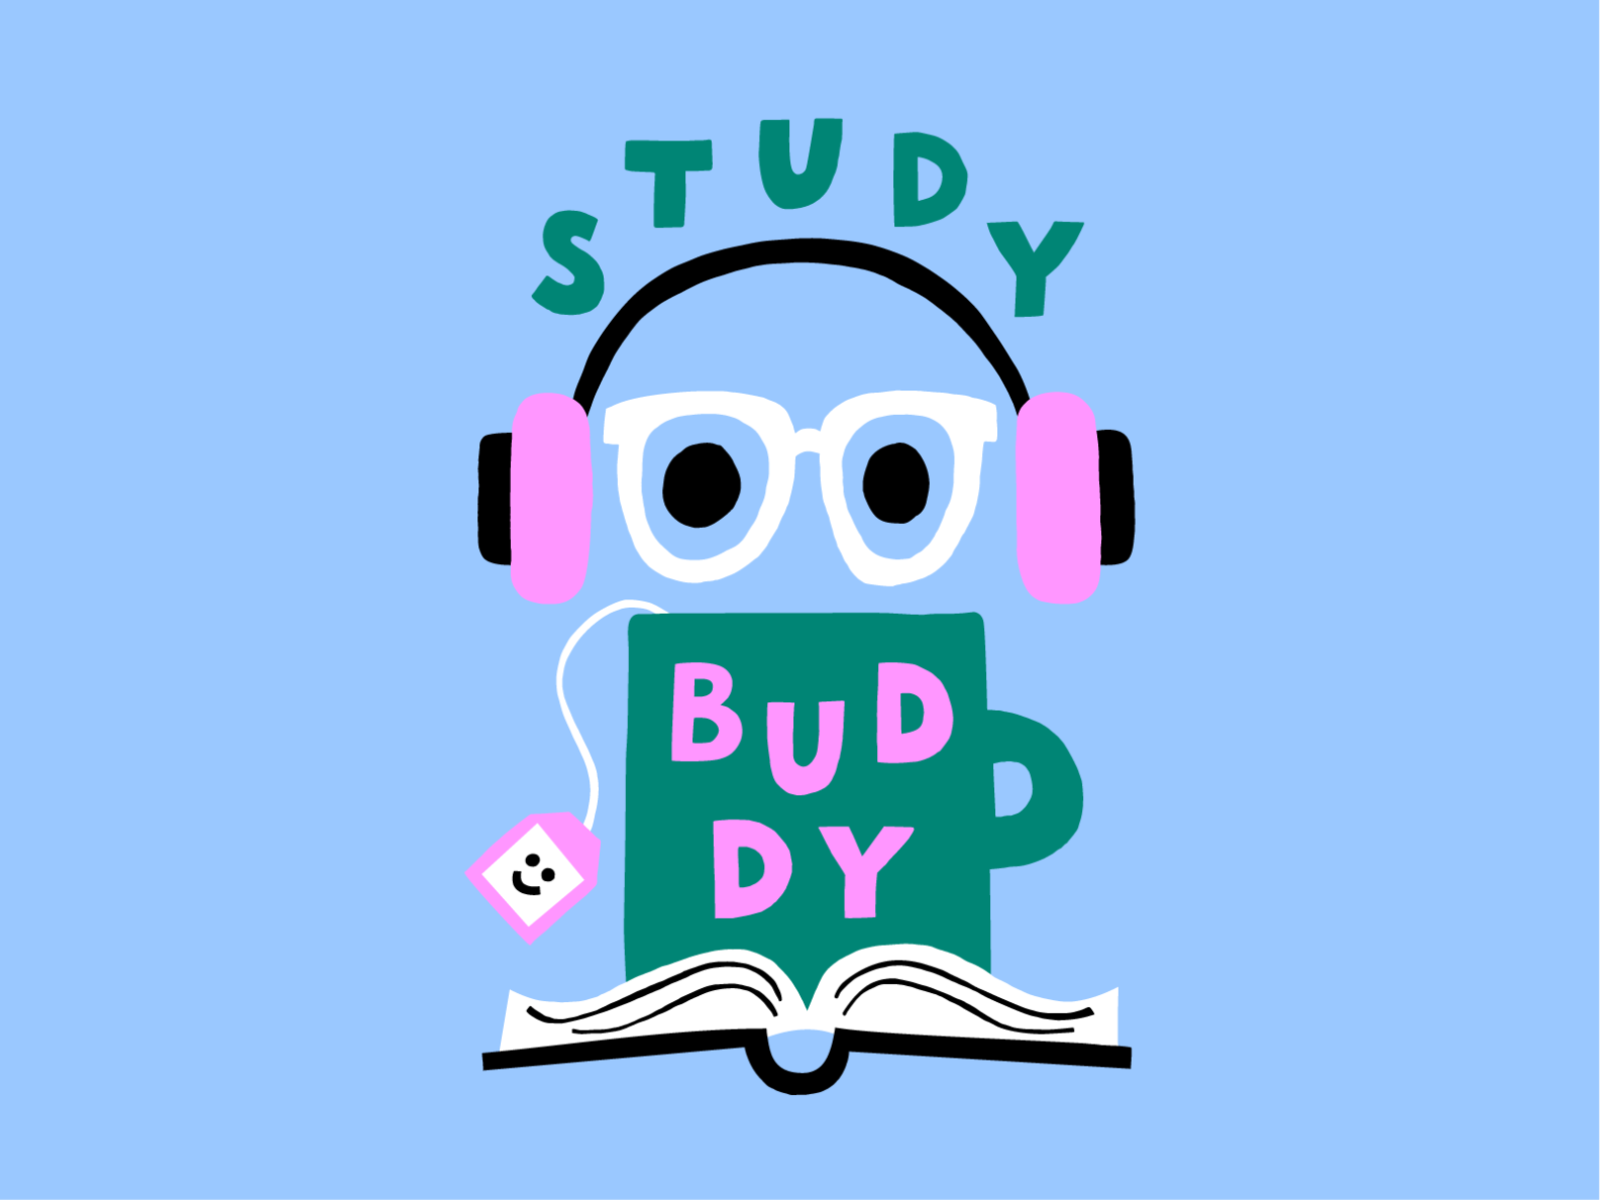 Study Buddy for Givingli by Leena Kisonen on Dribbble